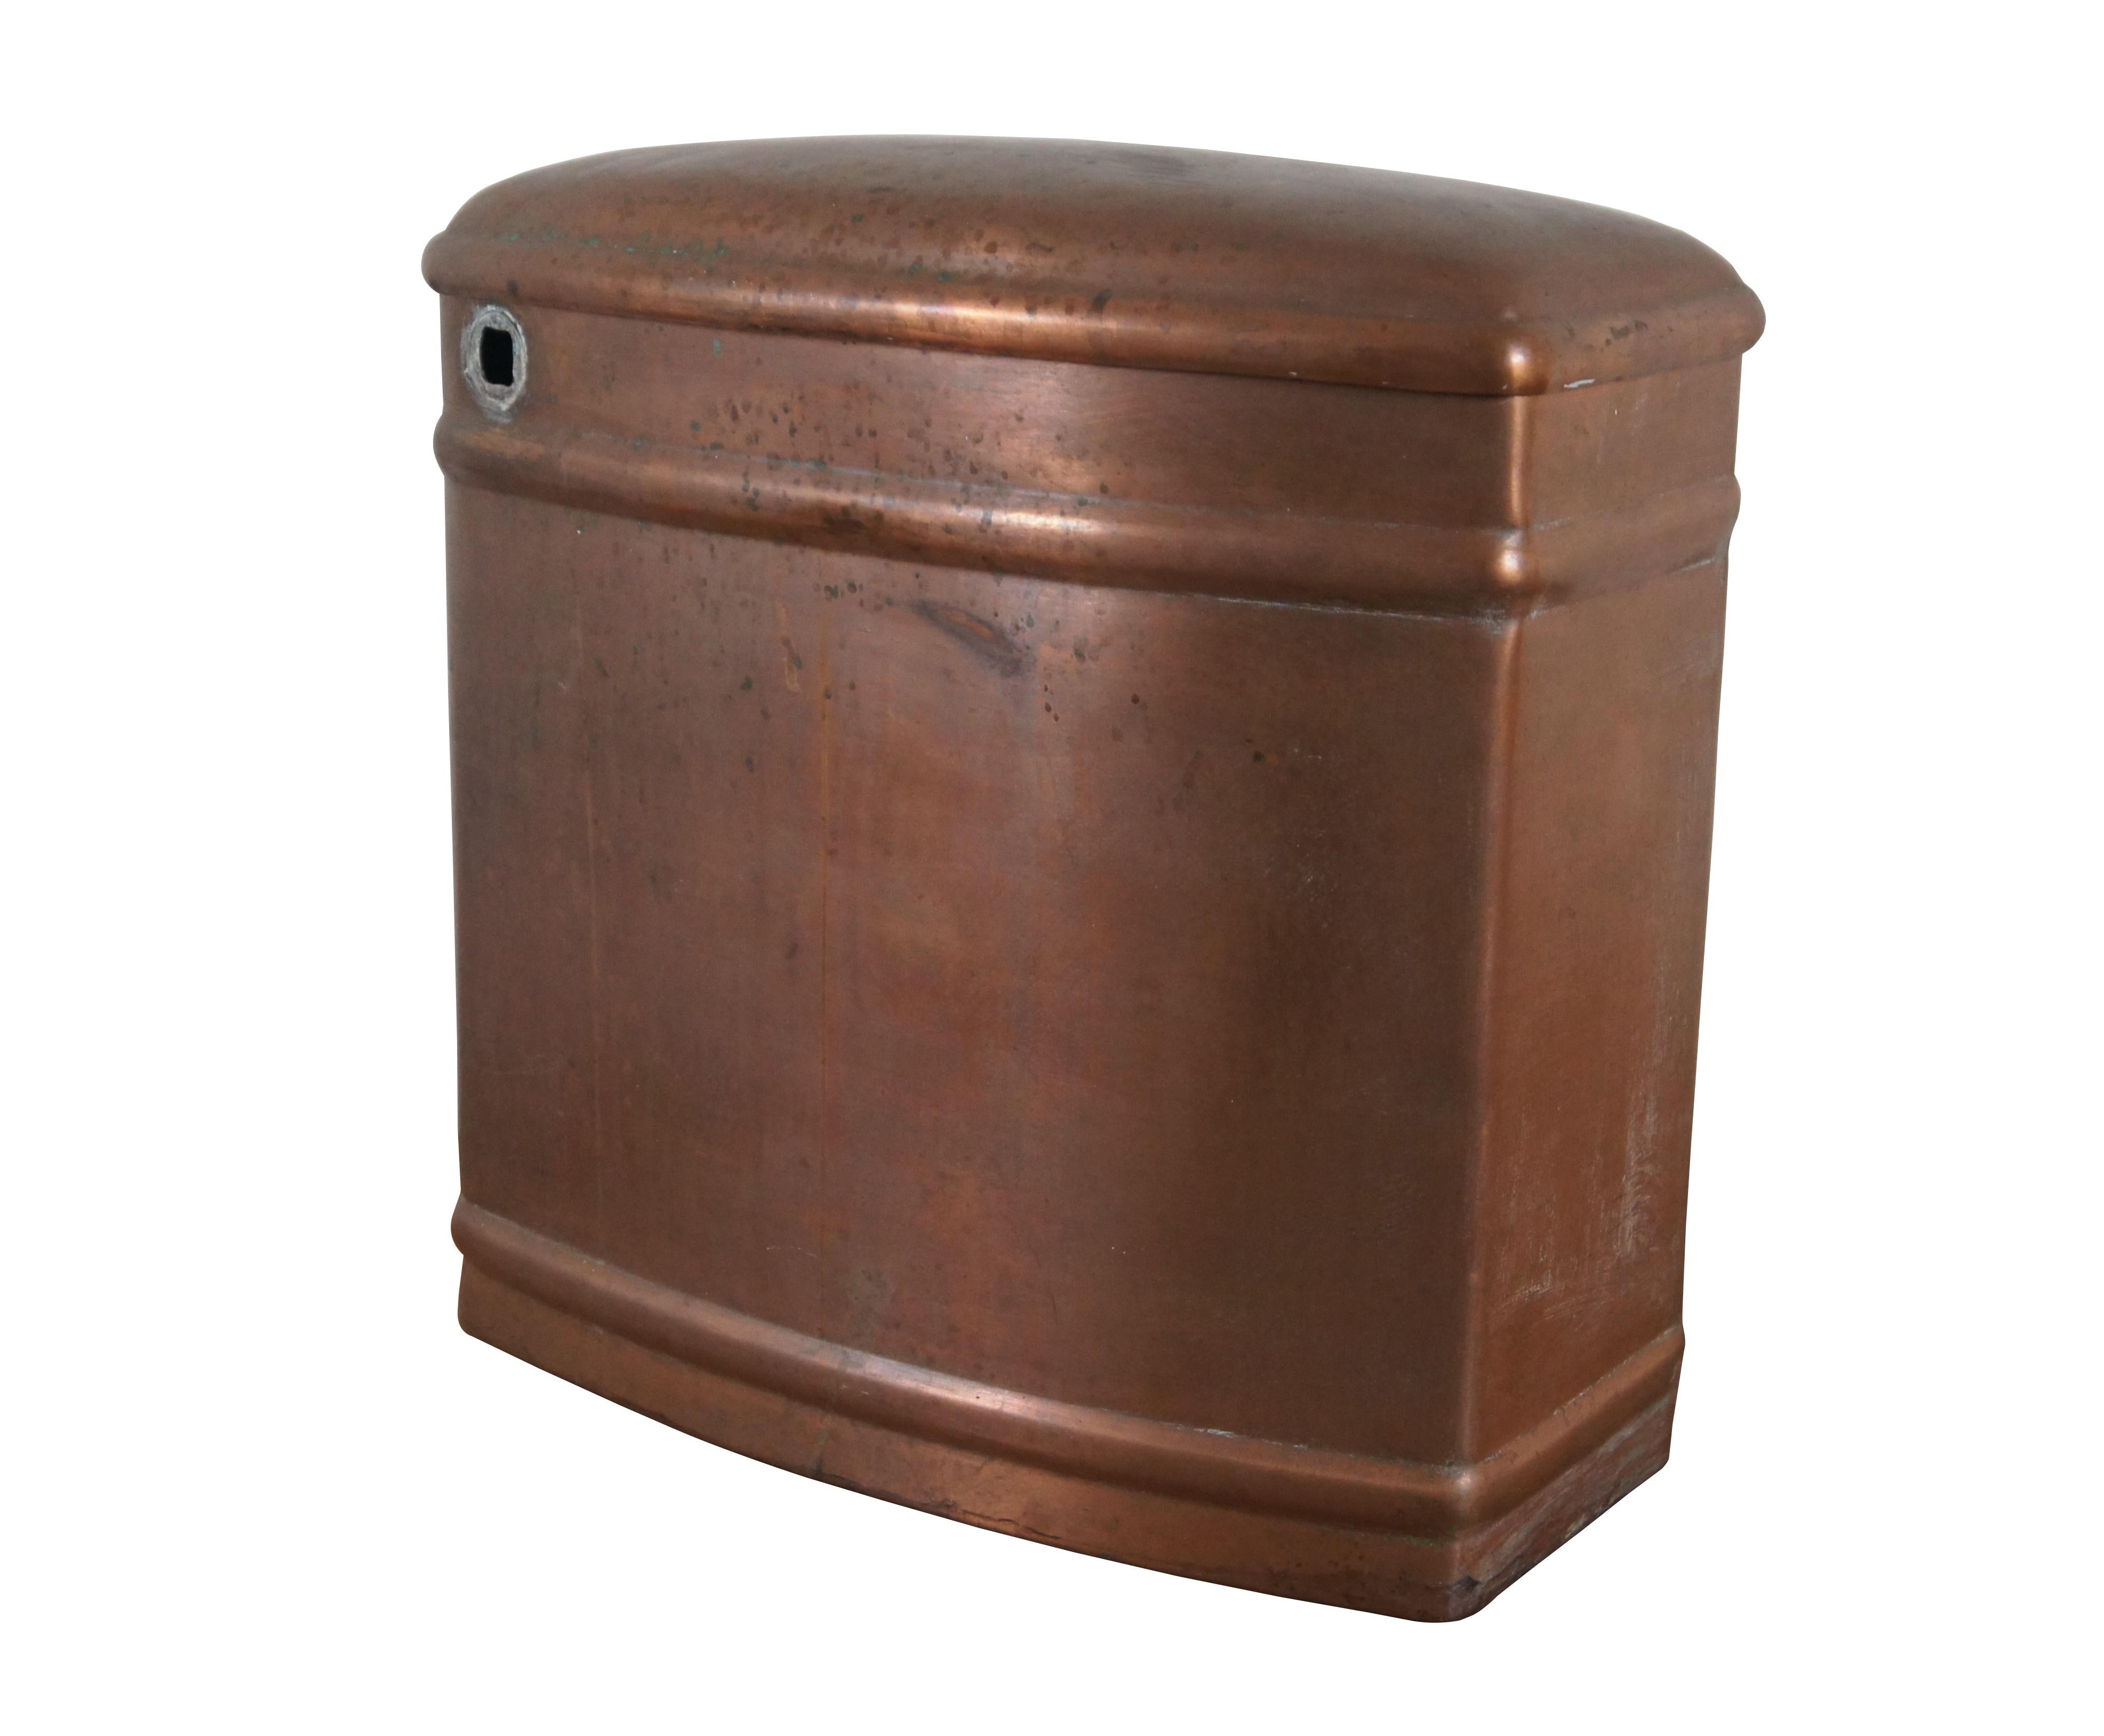 Spätviktorianischer, antiker Kupfertoilettenbehälter von Whiting-Copper. Hergestellt aus 24 Unzen Kupfer. Mit Griff aus Messing / weißem Porzellan / Spülungshebel von AAB Co.

Abmessungen:
15,5